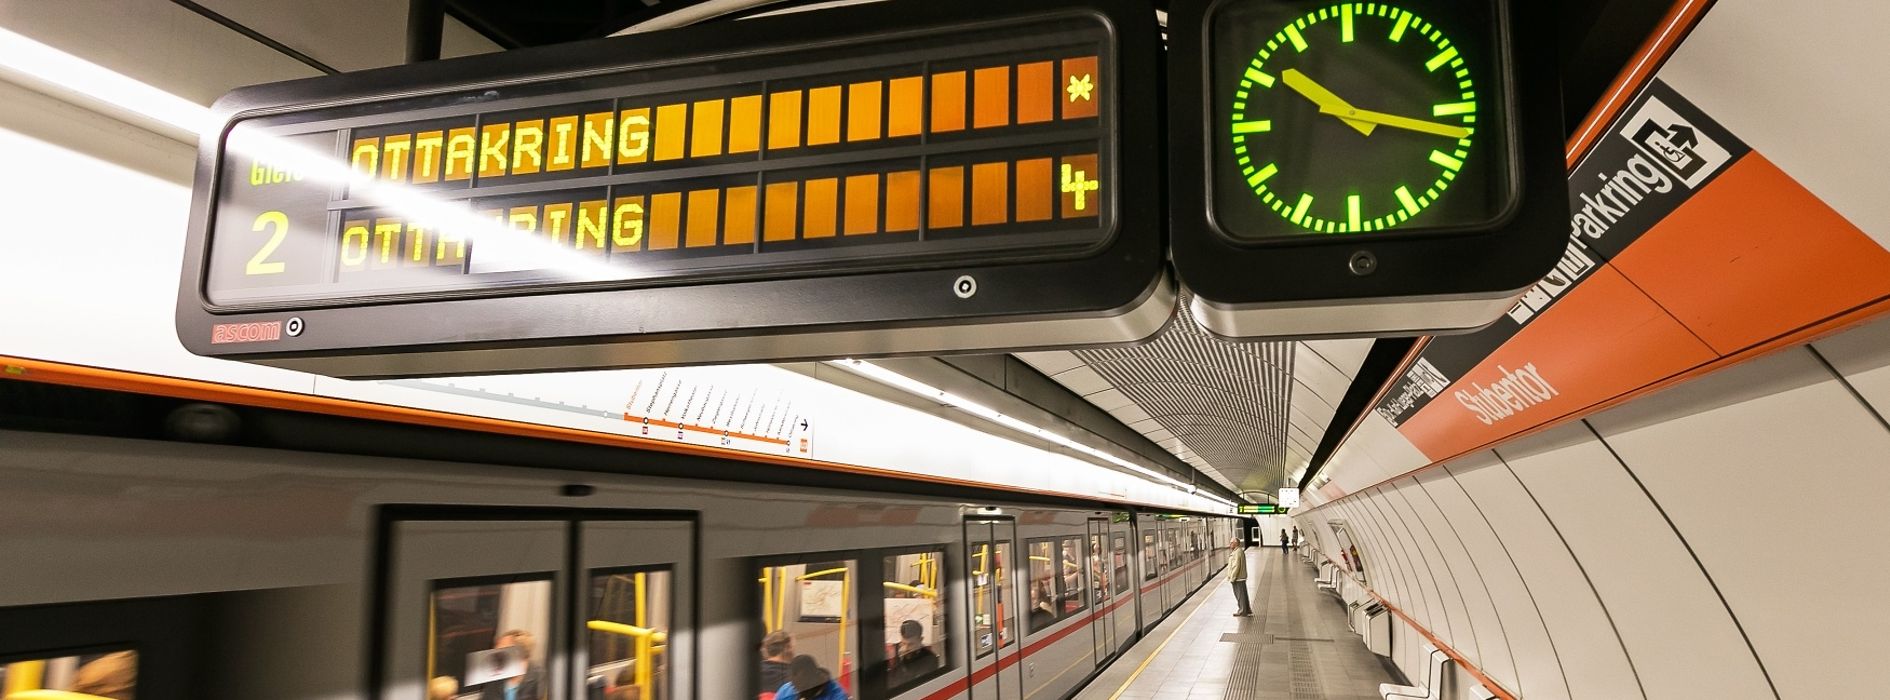 Informationsanzeige in der Wiener U-Bahn mit Uhr